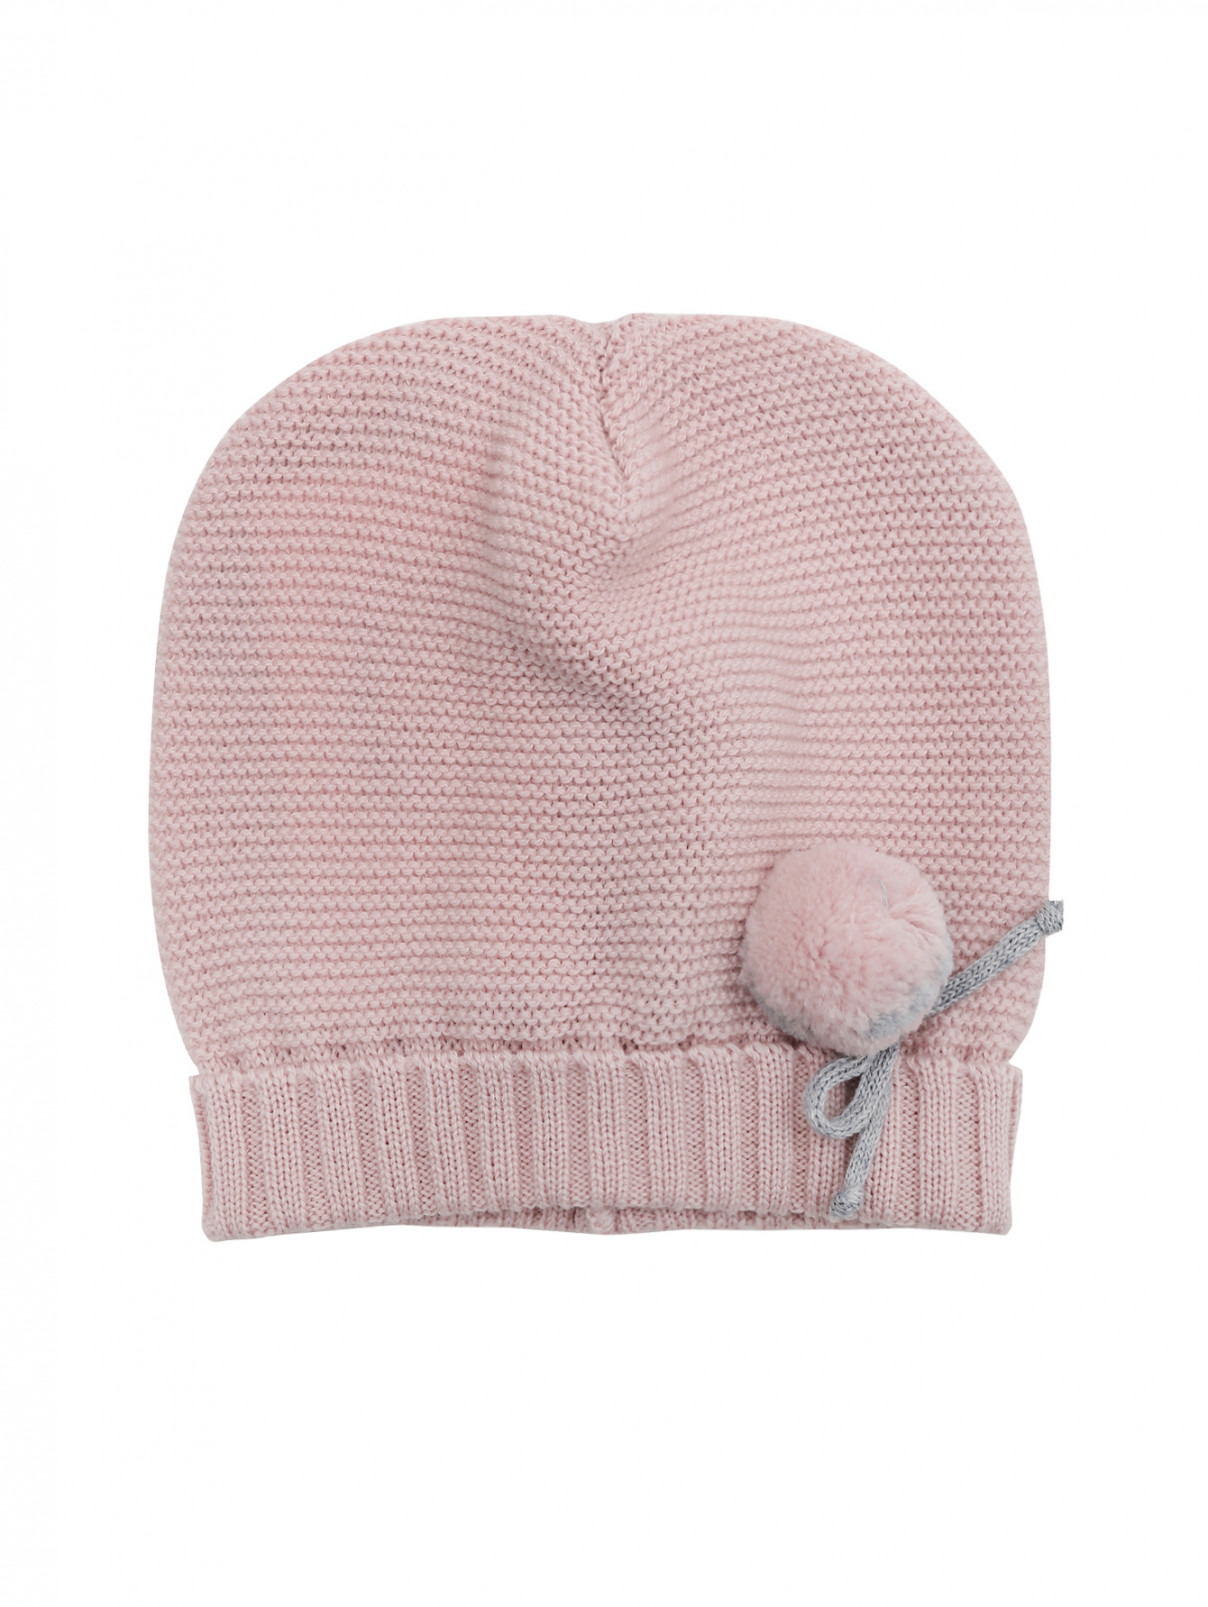 Шерстяная шапка с помпоном Bimbalo  –  Общий вид  – Цвет:  Розовый